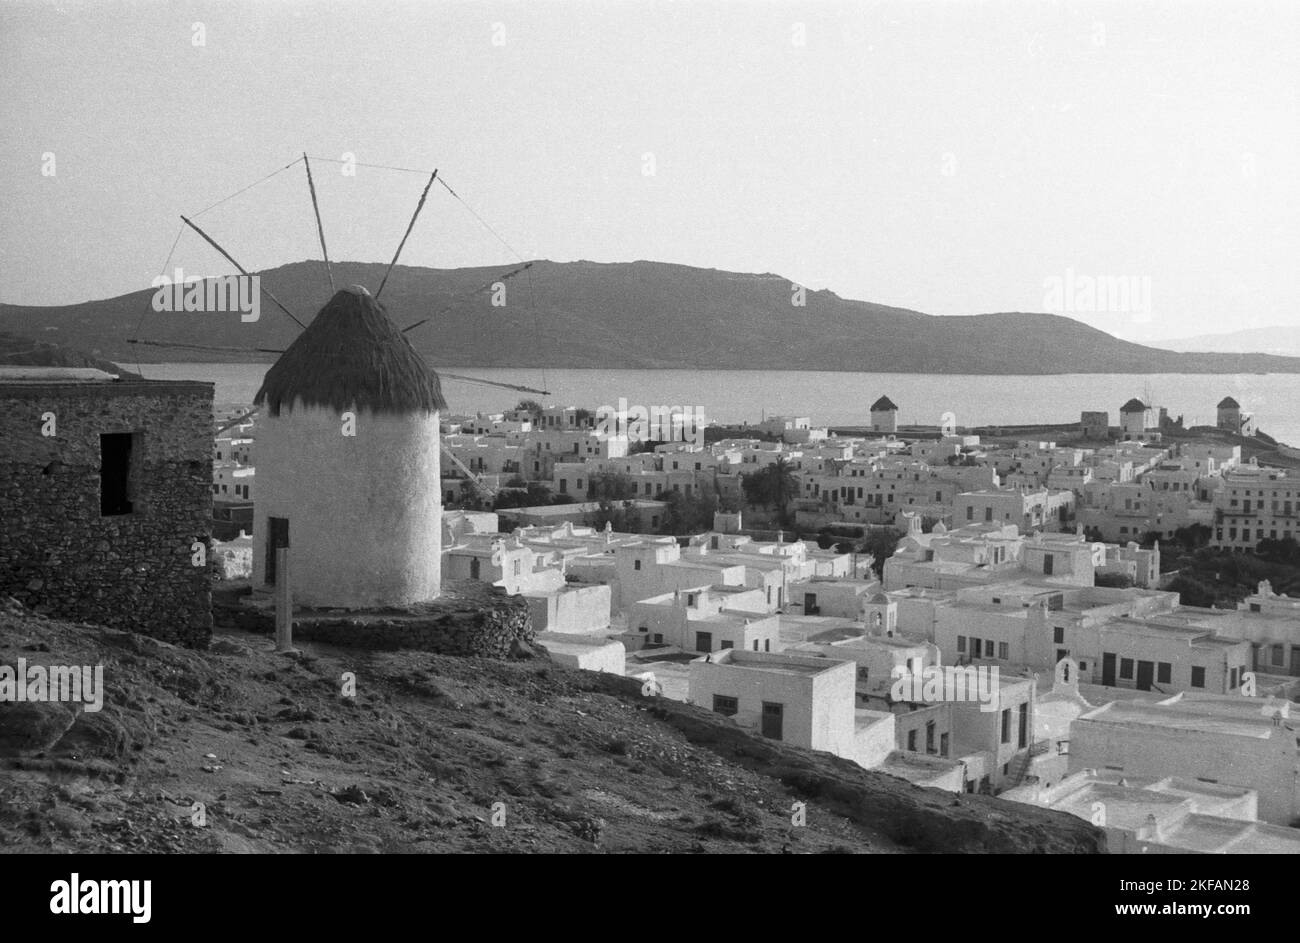 Griechenland - Eine Windmühle und ein Dorf als symbolisches Bild für Griechenland, 1954. Greece - A windmill and a village as a symbolic image for Greece, 1954. Stock Photo